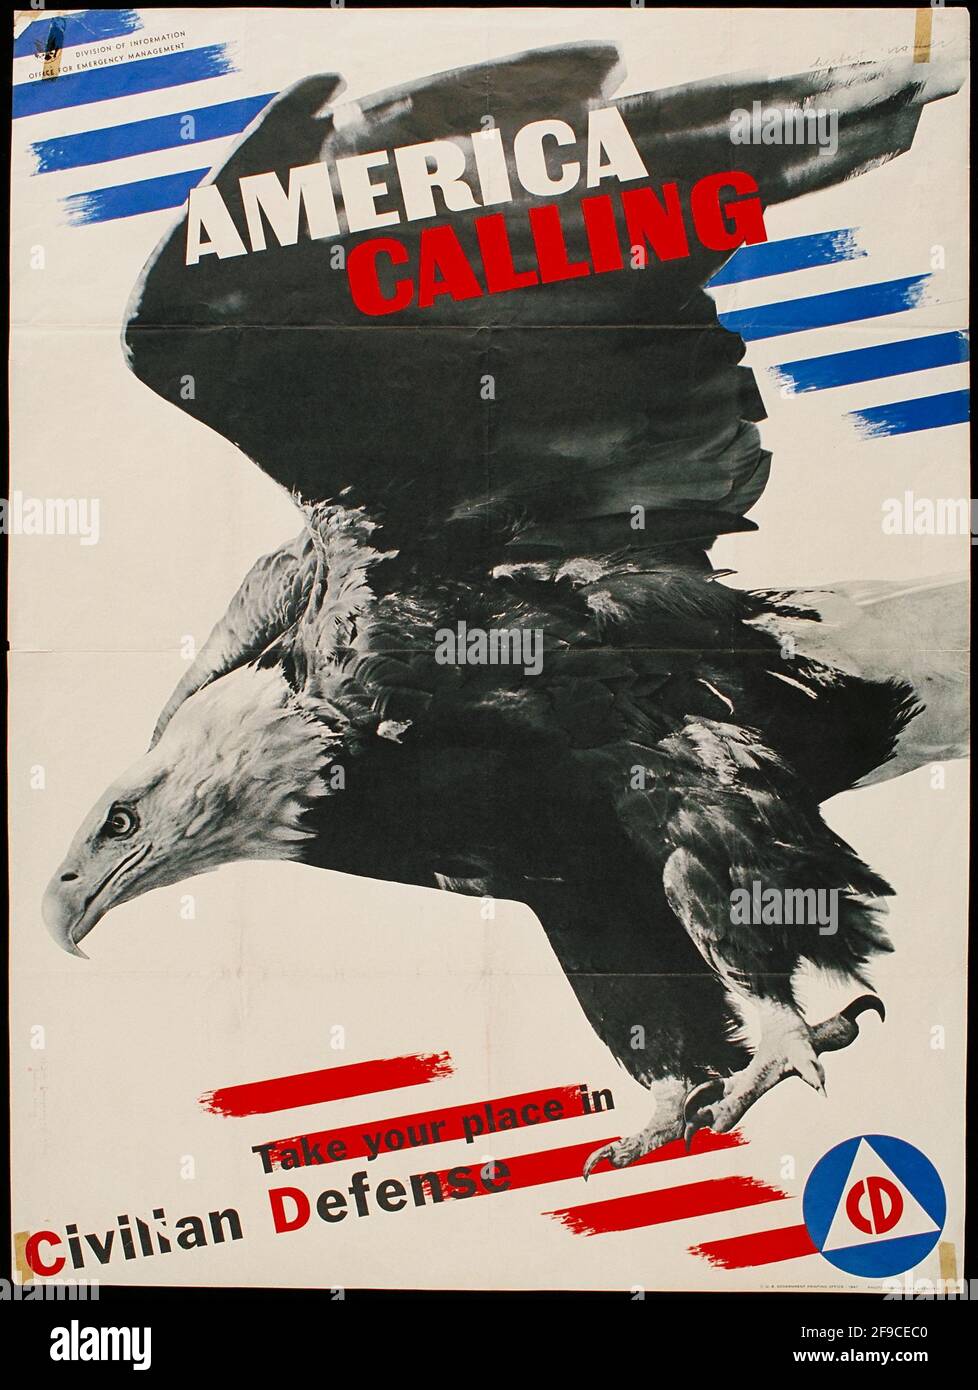 Ein amerikanisches Plakat für die Zivilverteidigung aus dem 2. Weltkrieg Stockfoto